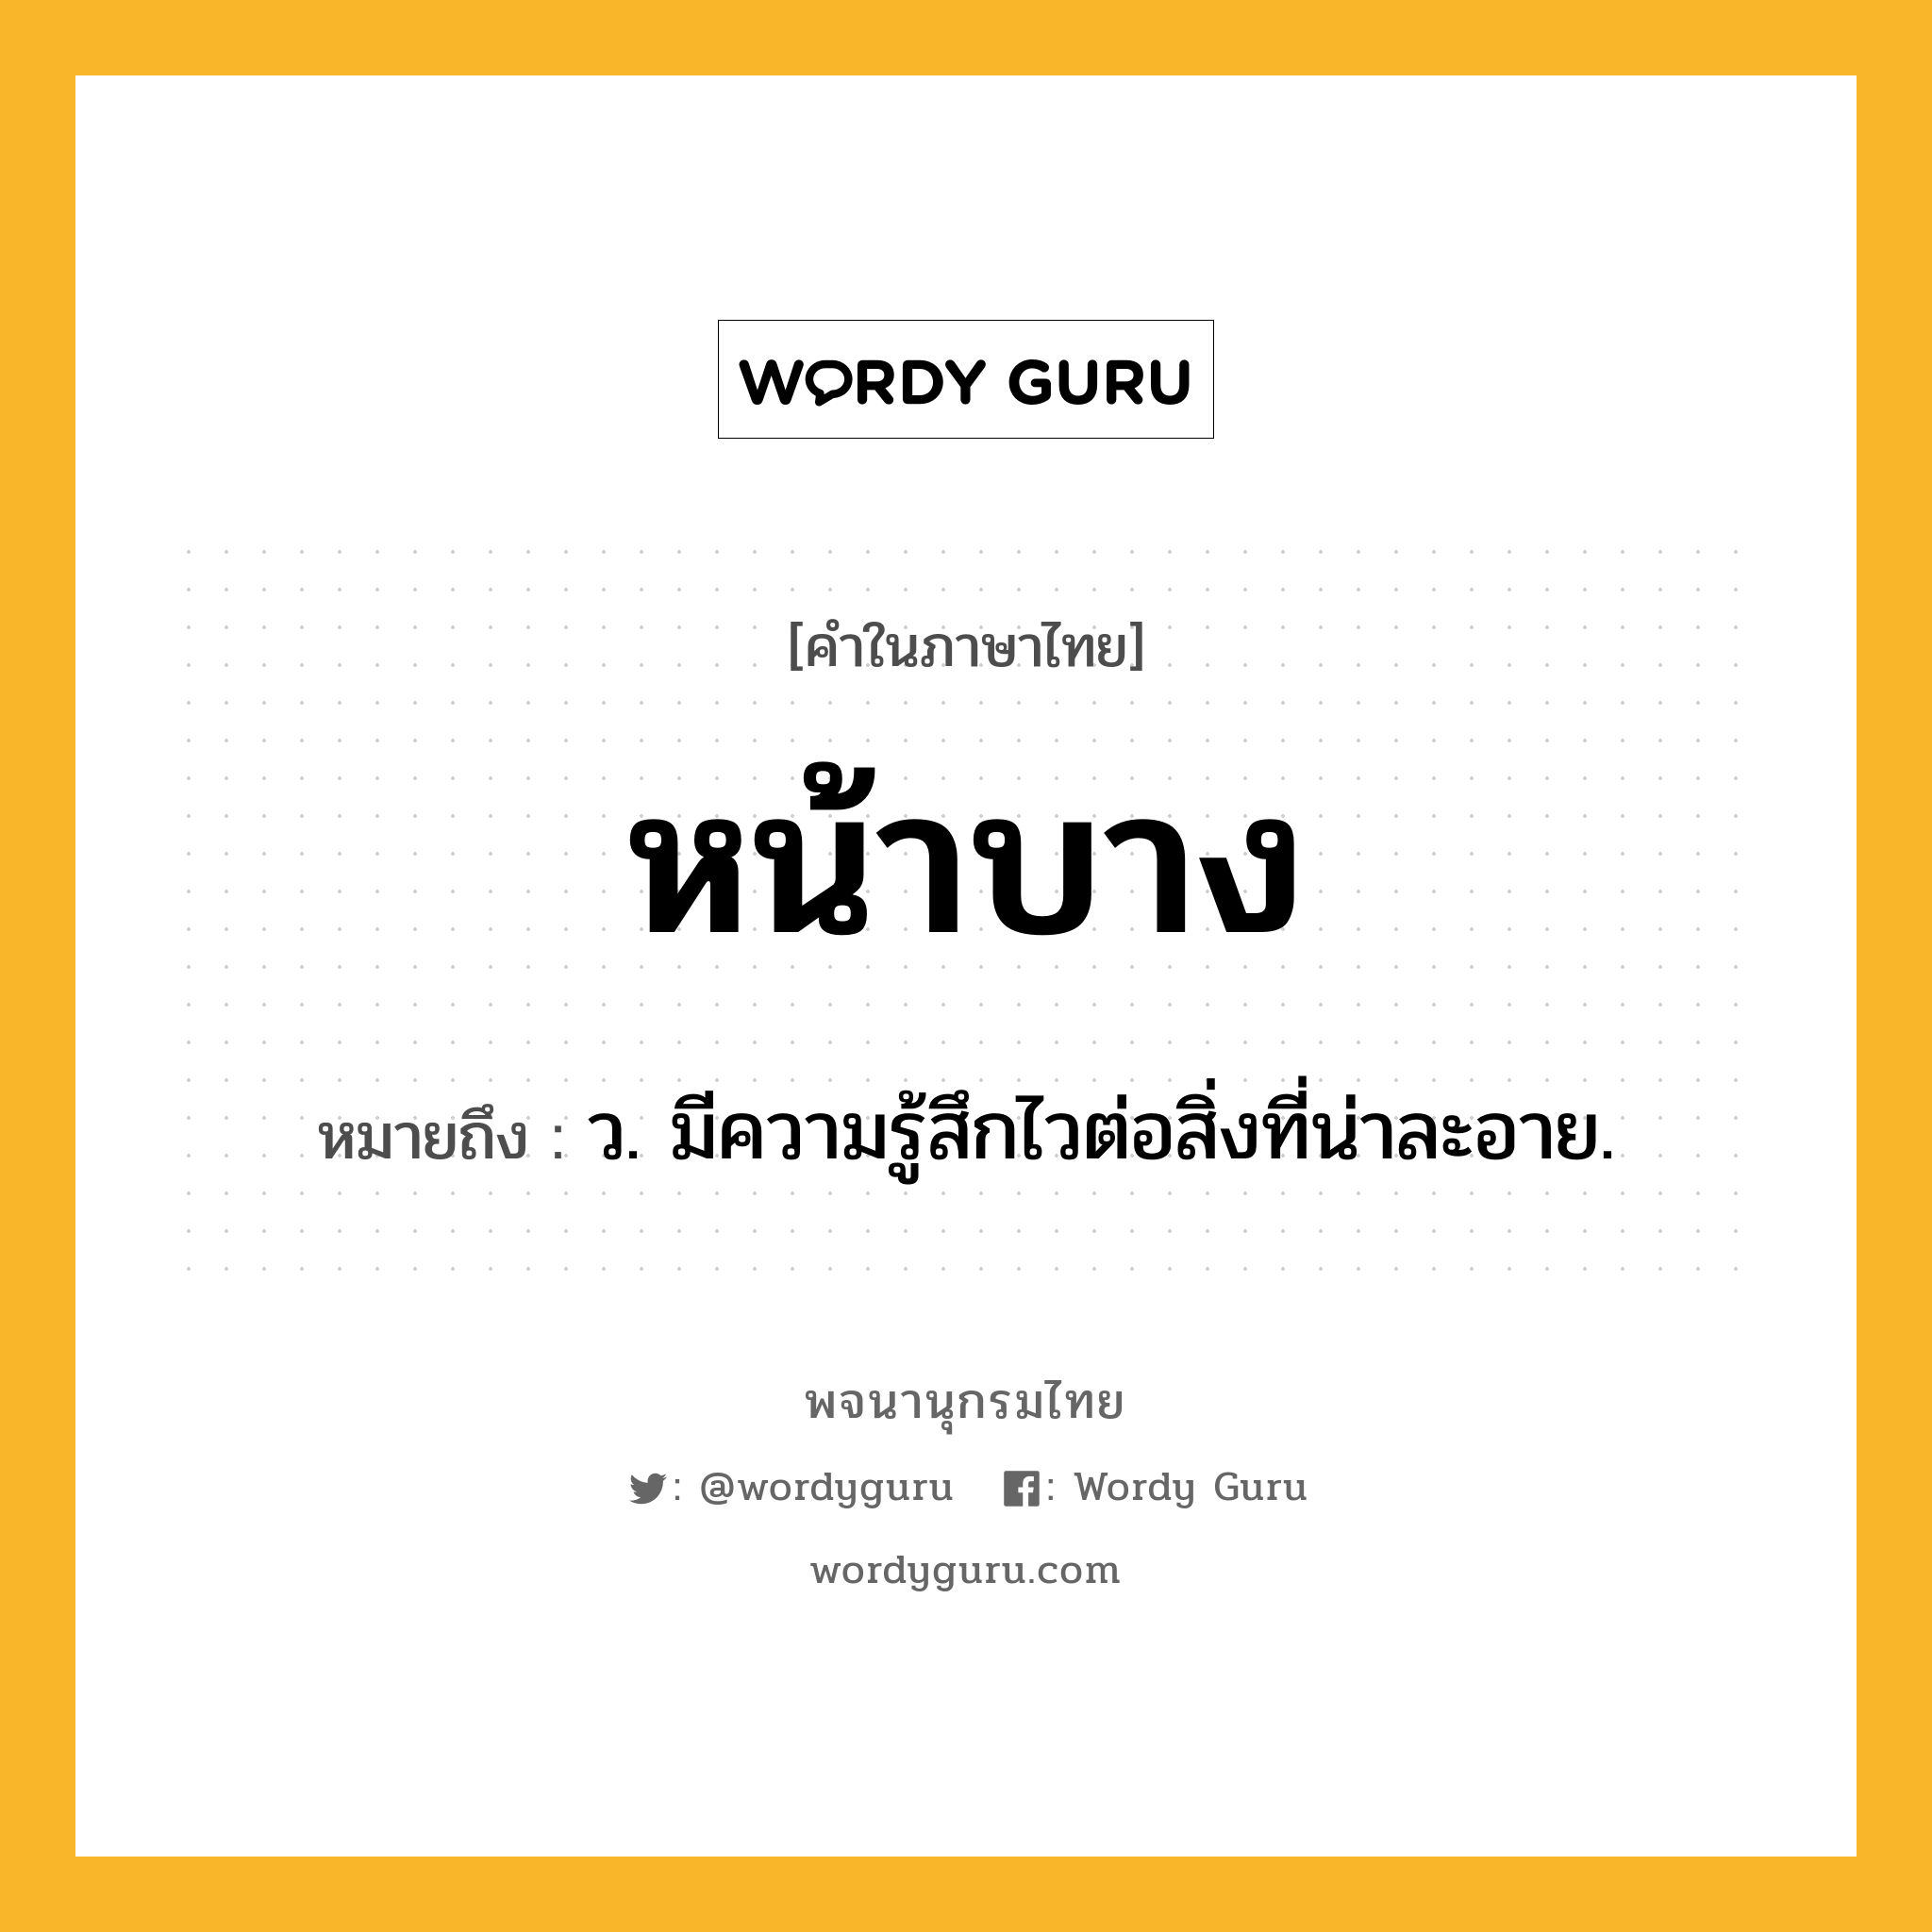 หน้าบาง ความหมาย หมายถึงอะไร?, คำในภาษาไทย หน้าบาง หมายถึง ว. มีความรู้สึกไวต่อสิ่งที่น่าละอาย.